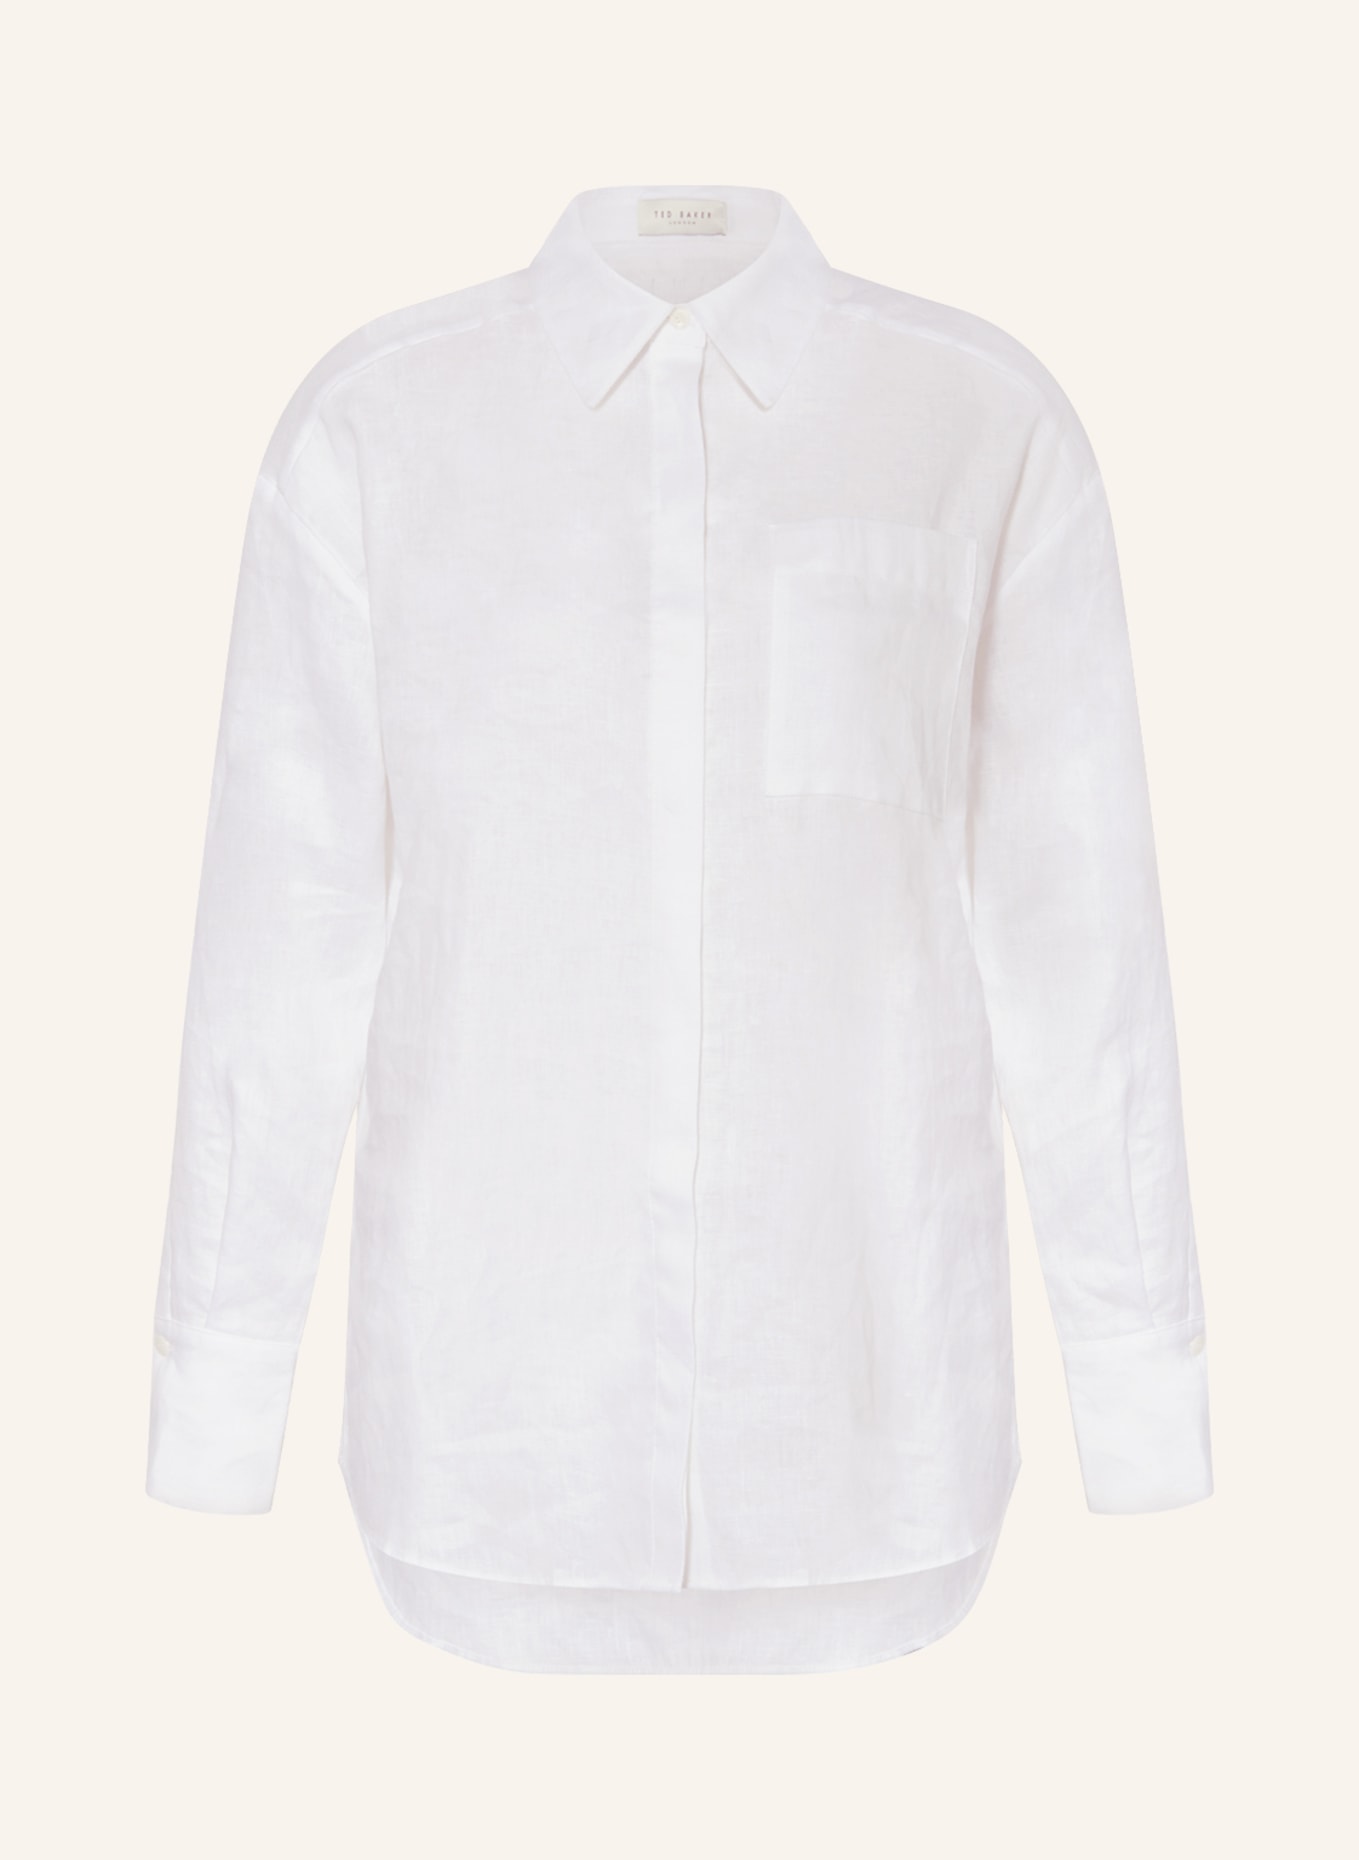 TED BAKER Hemdbluse DORAHH aus Leinen, Farbe: WHITE WHITE (Bild 1)